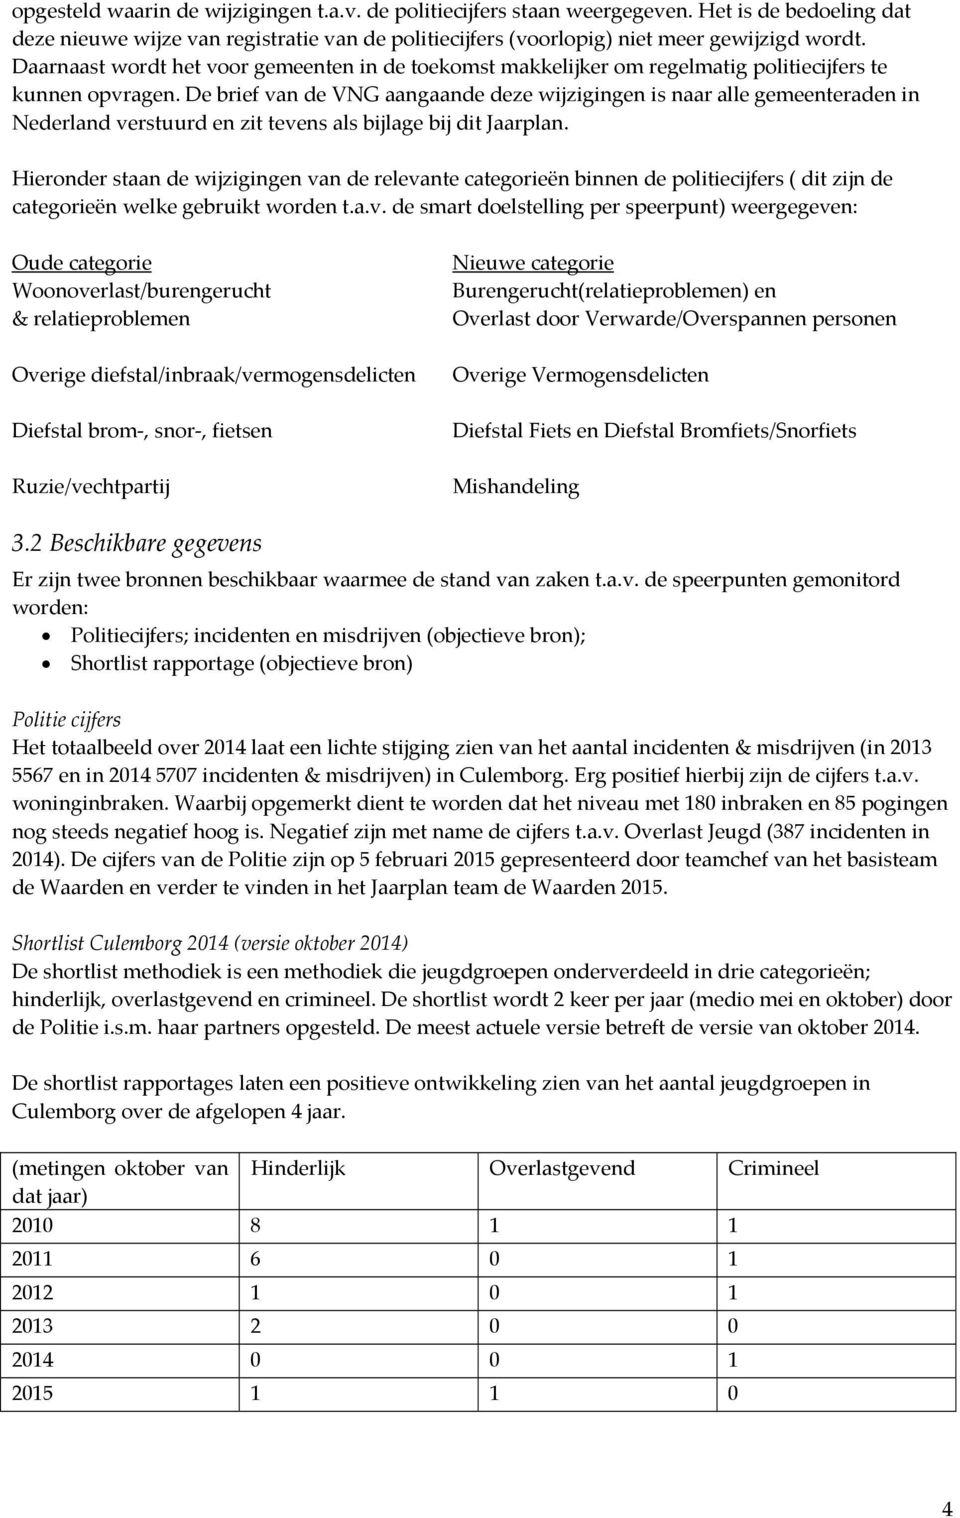 De brief van de VNG aangaande deze wijzigingen is naar alle gemeenteraden in Nederland verstuurd en zit tevens als bijlage bij dit Jaarplan.